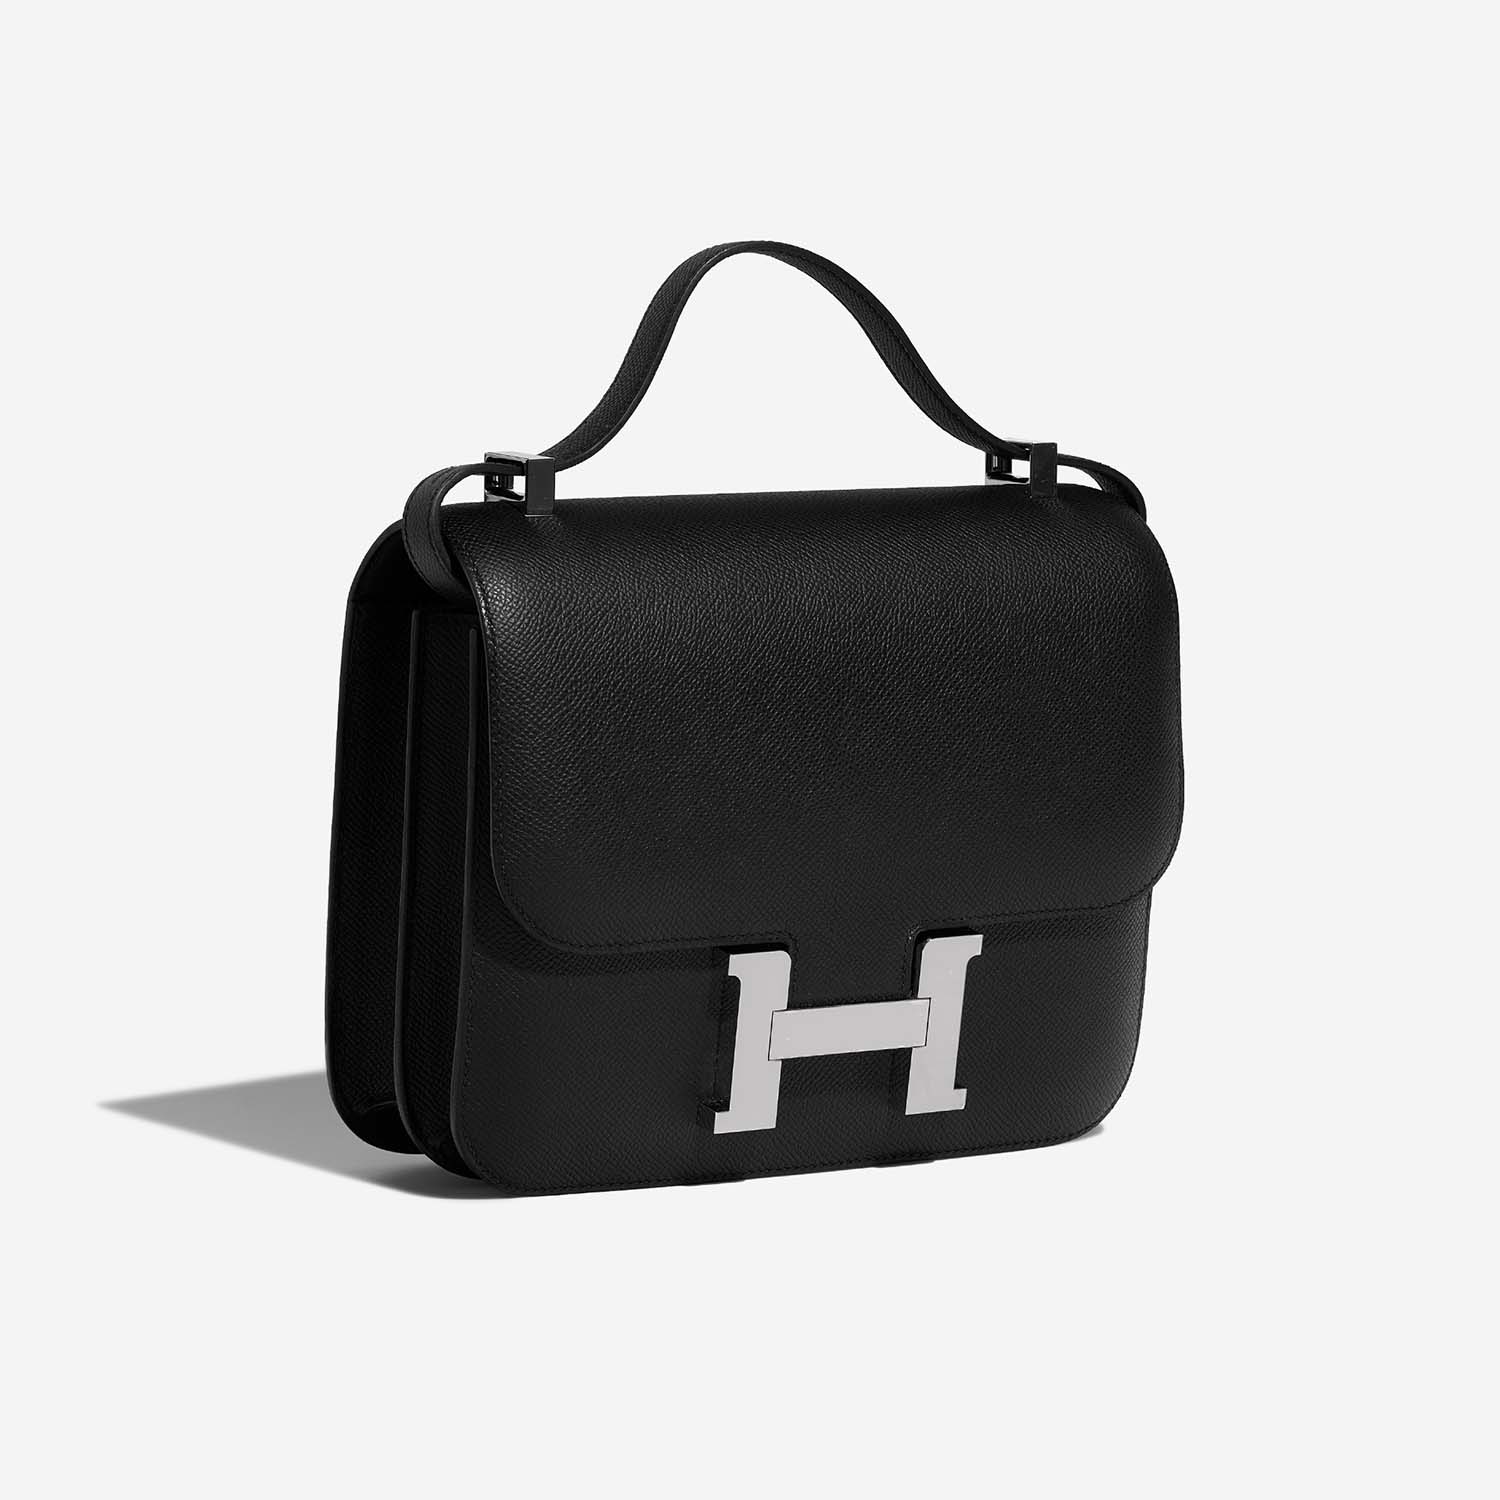 Hermès Constance 24 Schwarz 6SF S | Verkaufen Sie Ihre Designer-Tasche auf Saclab.com